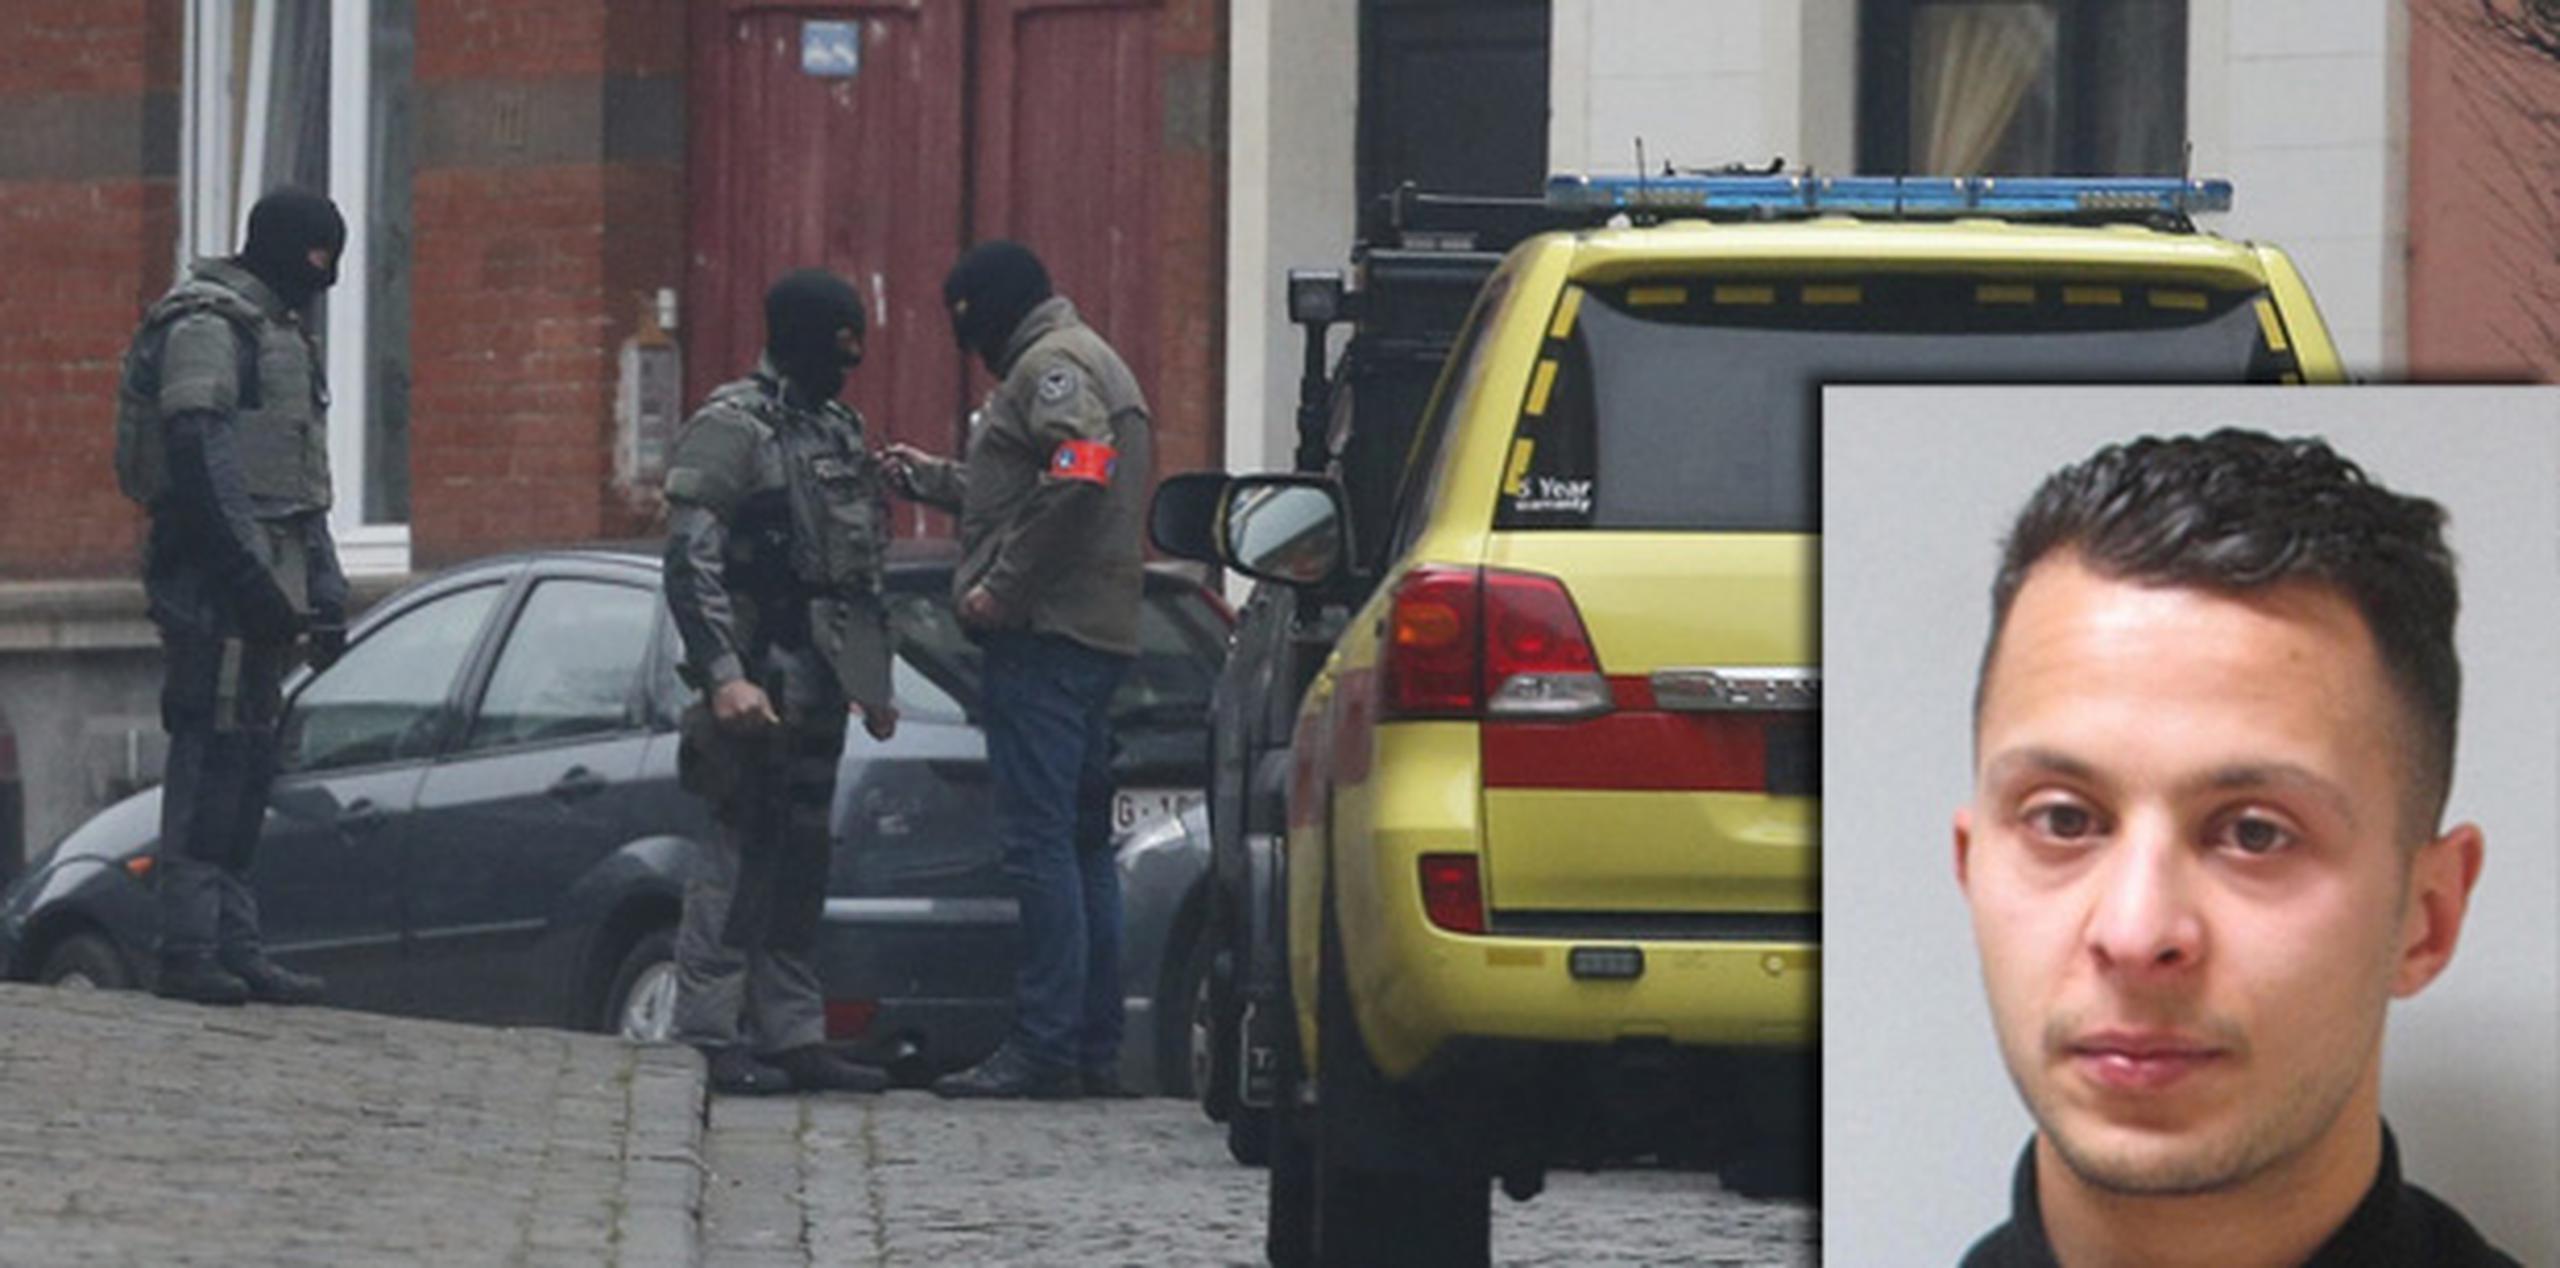 La operación se produjo después de que la policía científica belga encontrara las huellas dactilares de Abdeslam en una vivienda. (EFE)